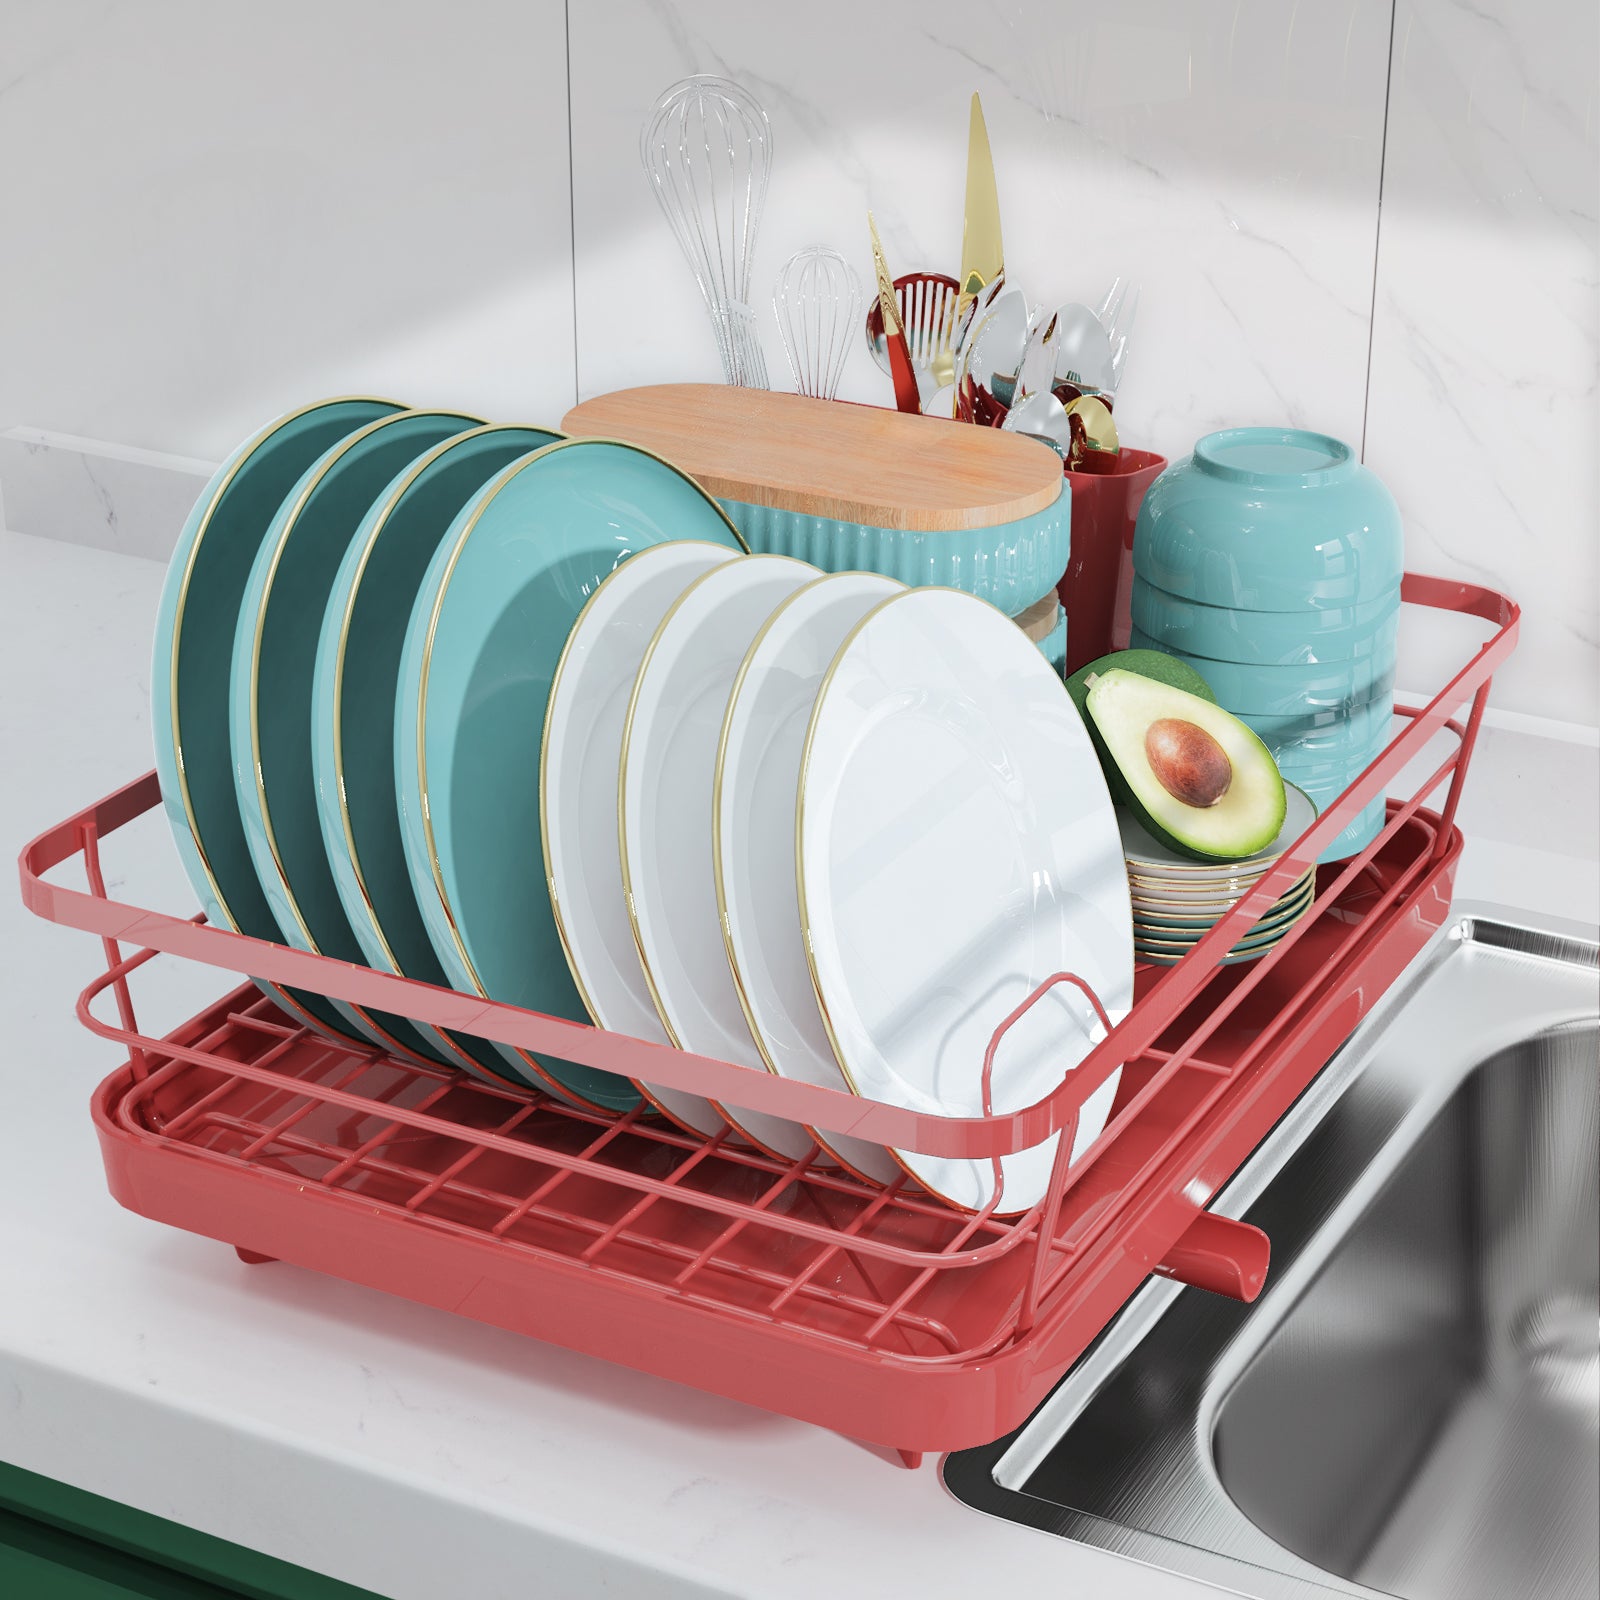 Dish Drying Rack, 2 Tier Dish Drainer Easy Install Non-Slip Dish